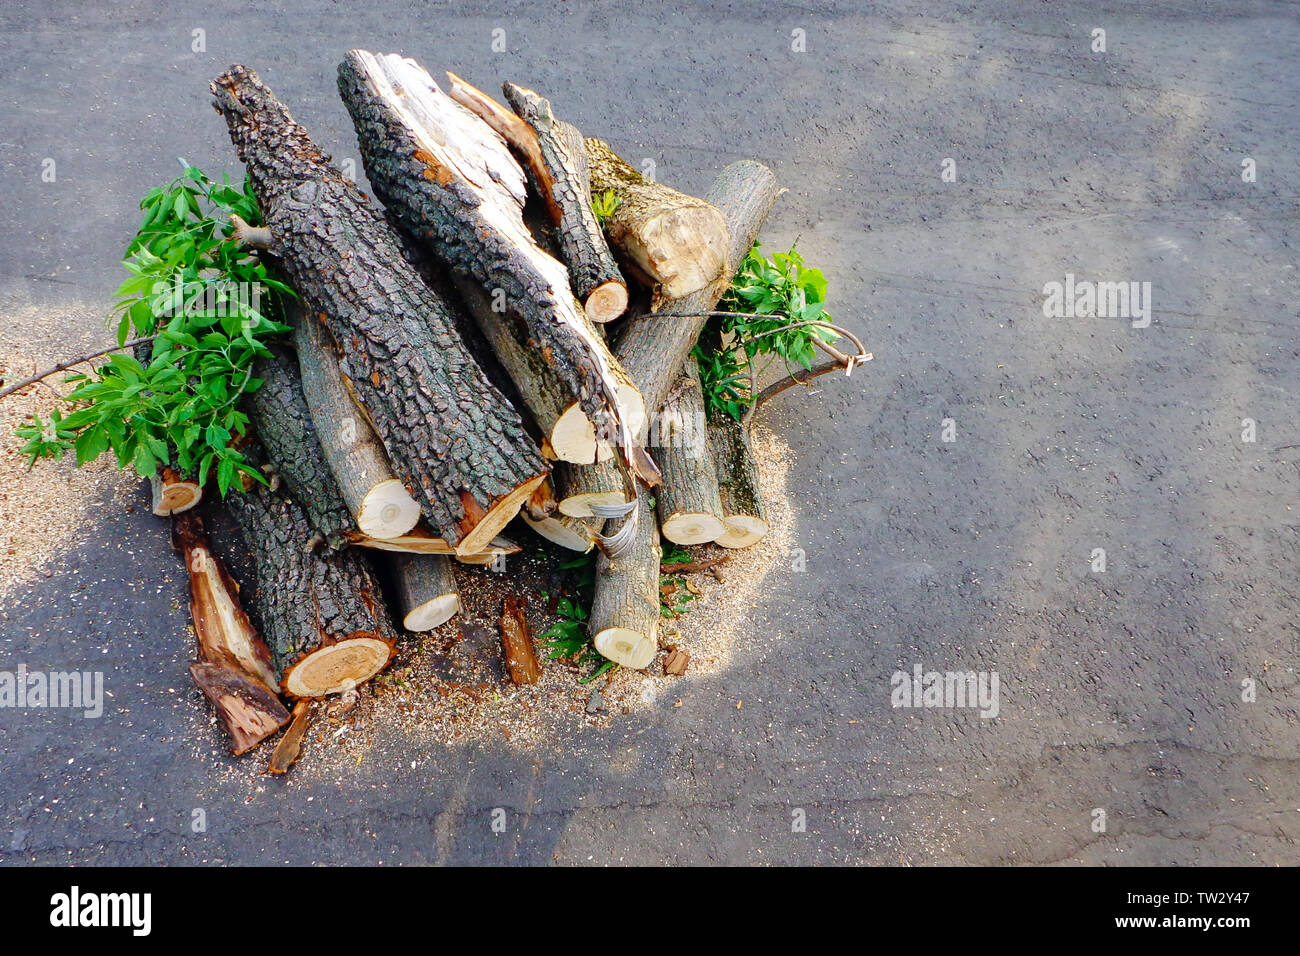 Troncos de madera recién cortada con hojas se apilan sobre asfalto. Poda y tala de árboles enfermos en parques urbanos. Foto de stock